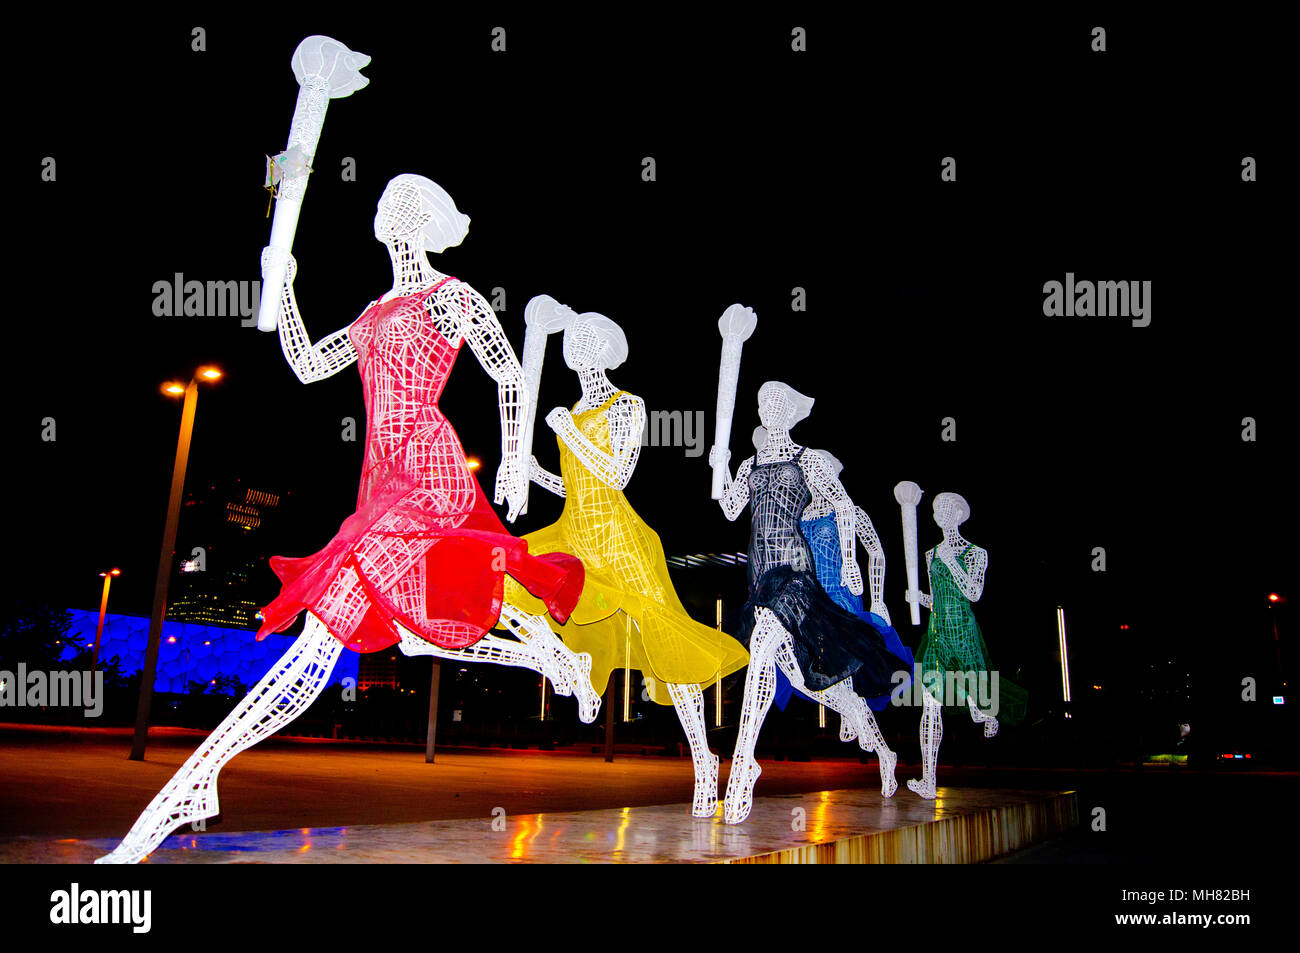 Relais de la flamme olympique de Beijing sculpture, photographié de nuit. Cette œuvre d'art public dans le parc olympique, Beijing, Chine, comprend cinq dames. Banque D'Images